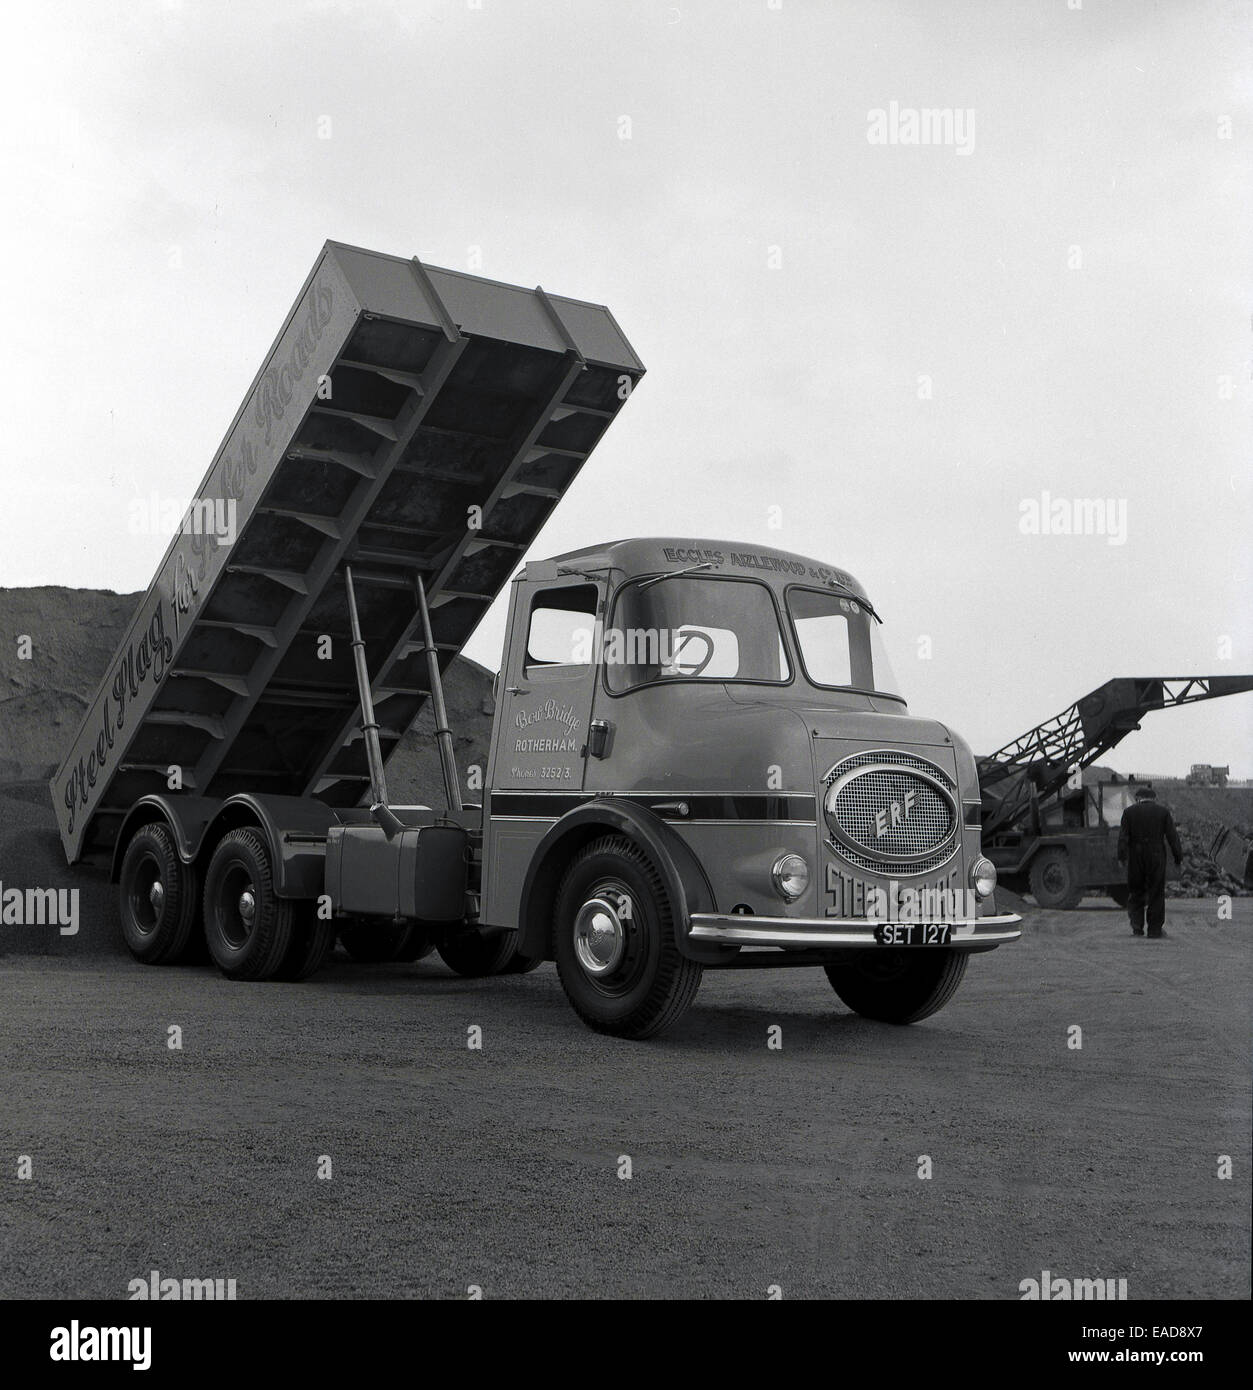 ERF (camion) azienda Foto-storiche-anni-cinquanta-una-scoria-di-acciaio-carrello-scarico-presso-un-cantiere-o-deposito-ead8x7